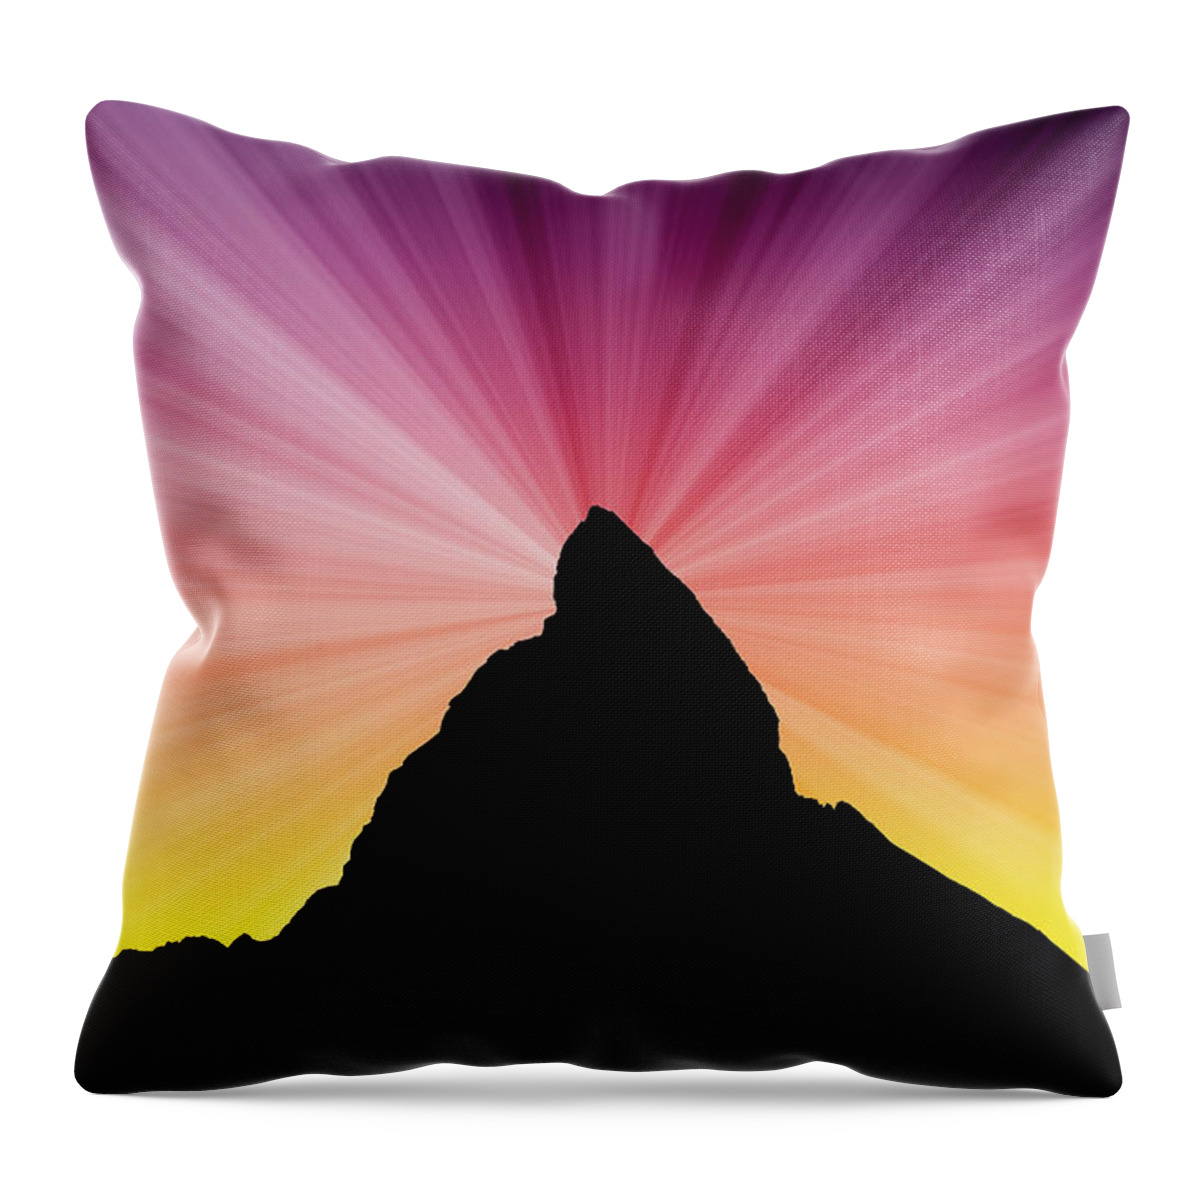 Scenics Throw Pillow featuring the photograph Matterhorn #6 by Raimund Linke